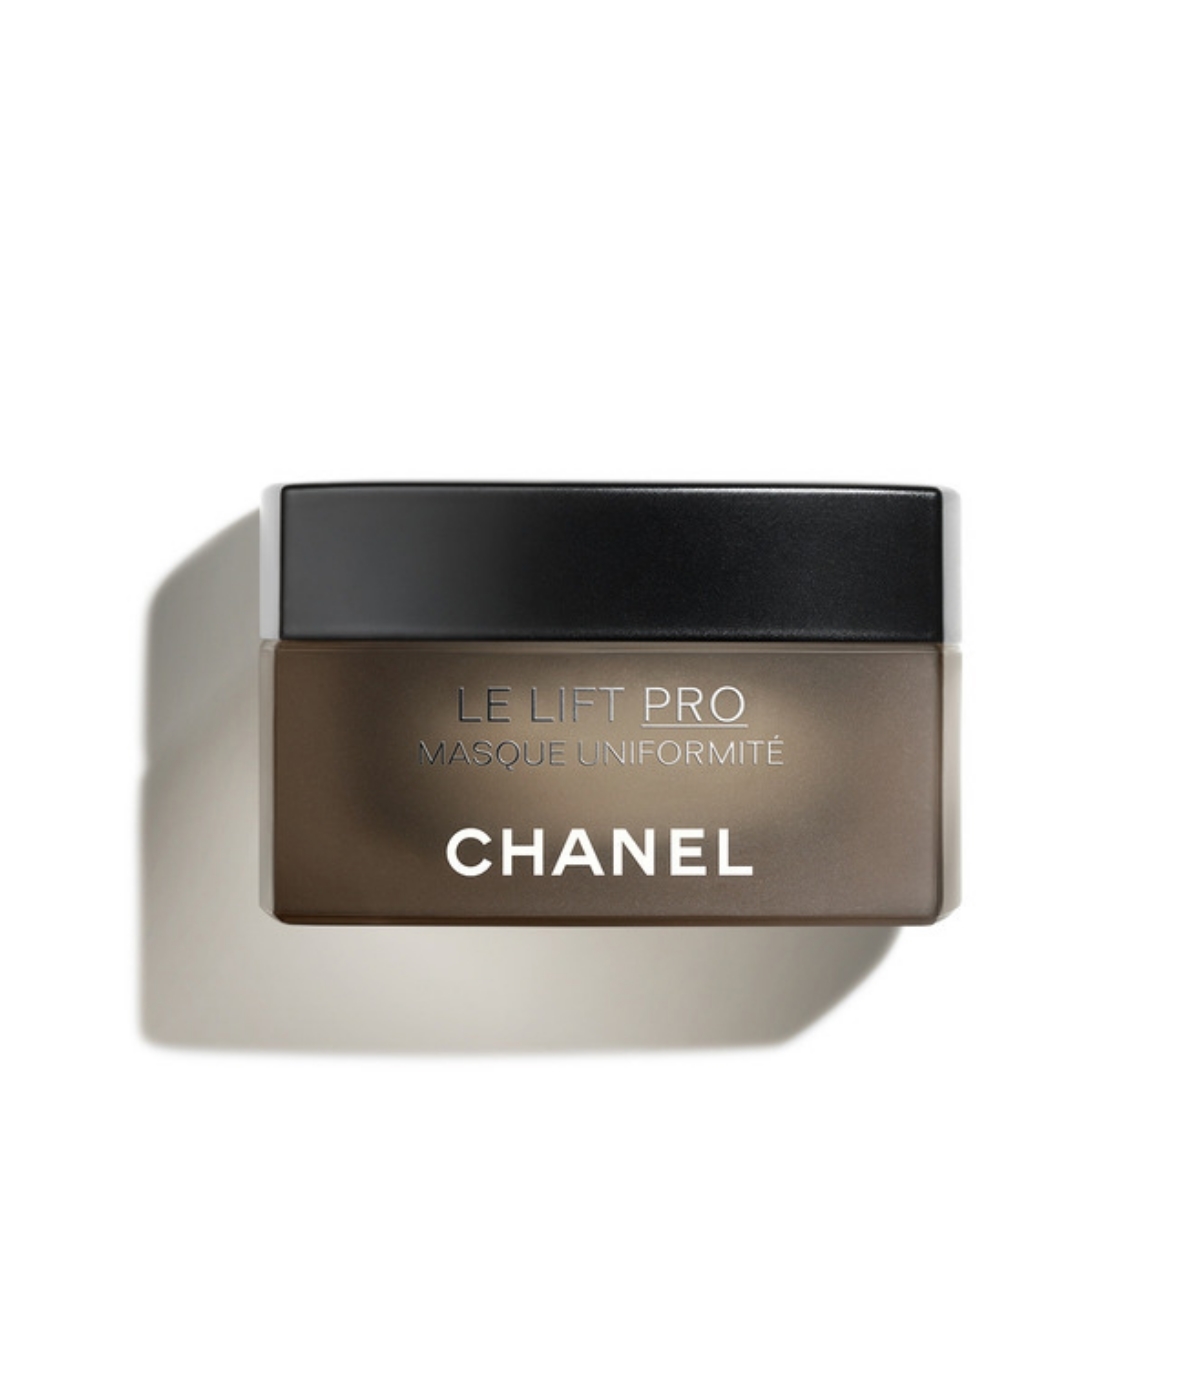 Le Lift Pro Masque Uniformité, Chanel.